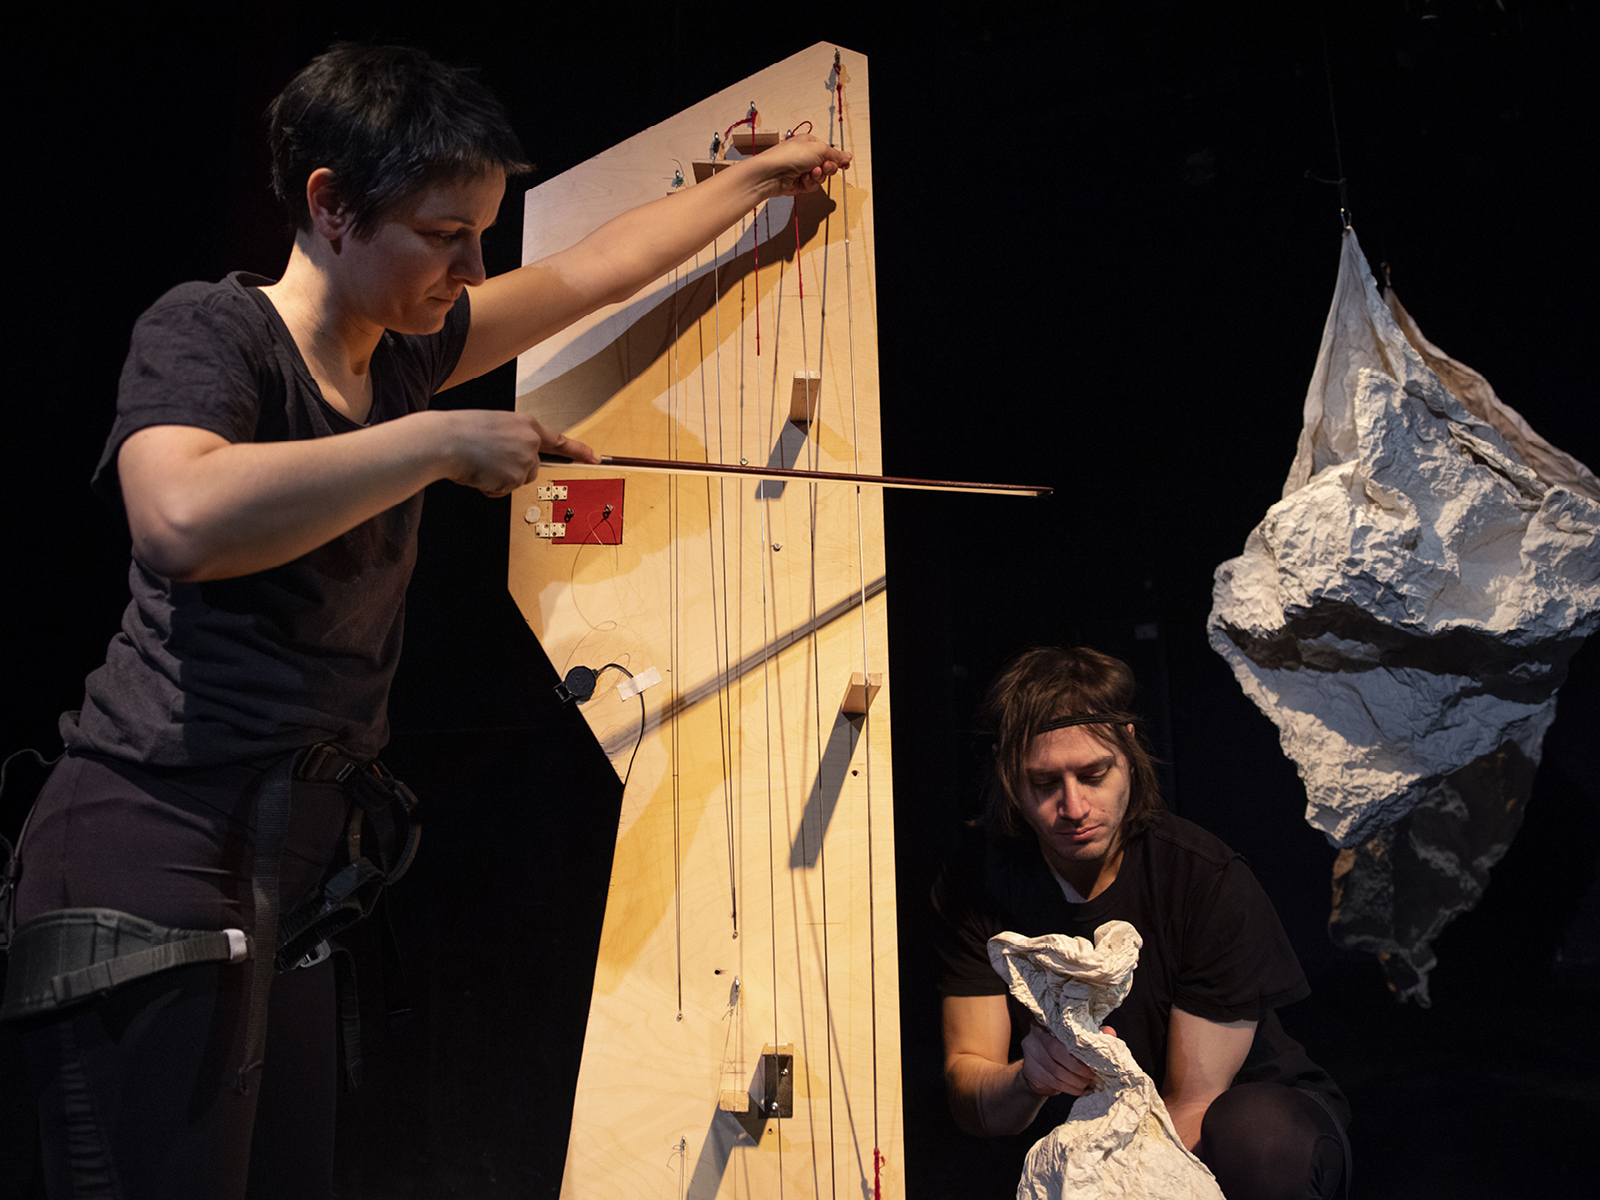 Performerin steht und streicht mit Geigenbogen die Saiten eines selbstgebauten Holzinstruments. Rechts daneben hockt ein weiterer Spieler, der mit den Händen ein papierartiges Material animiert als ob es eine Puppe wäre.